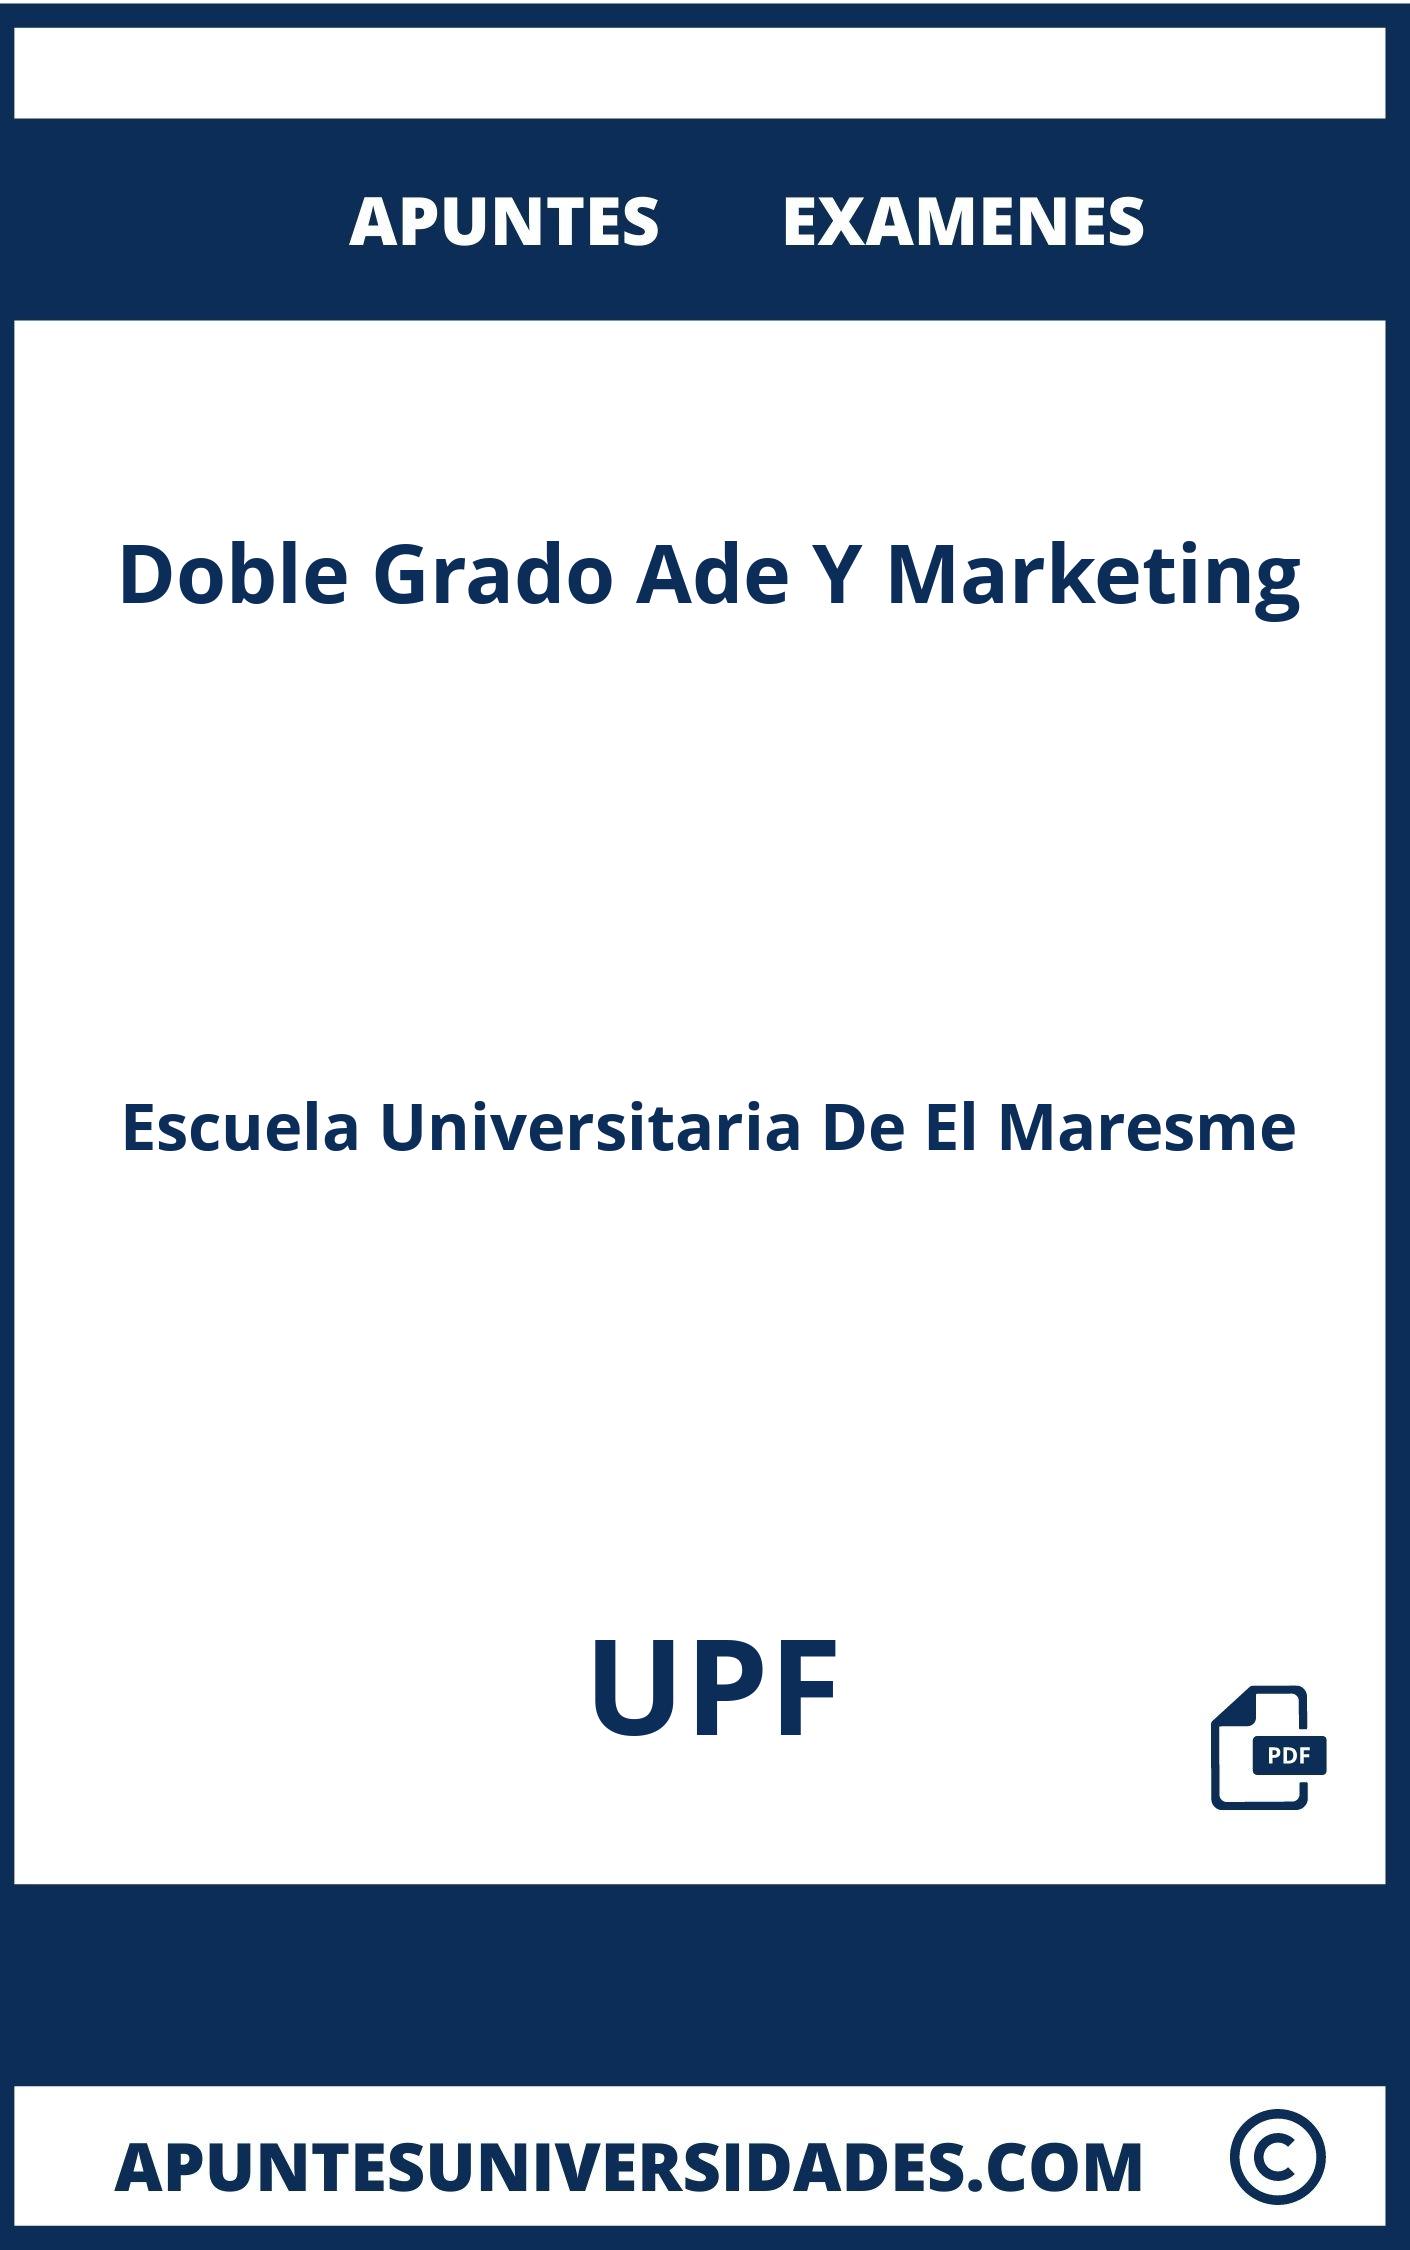 Examenes y Apuntes Doble Grado Ade Y Marketing UPF